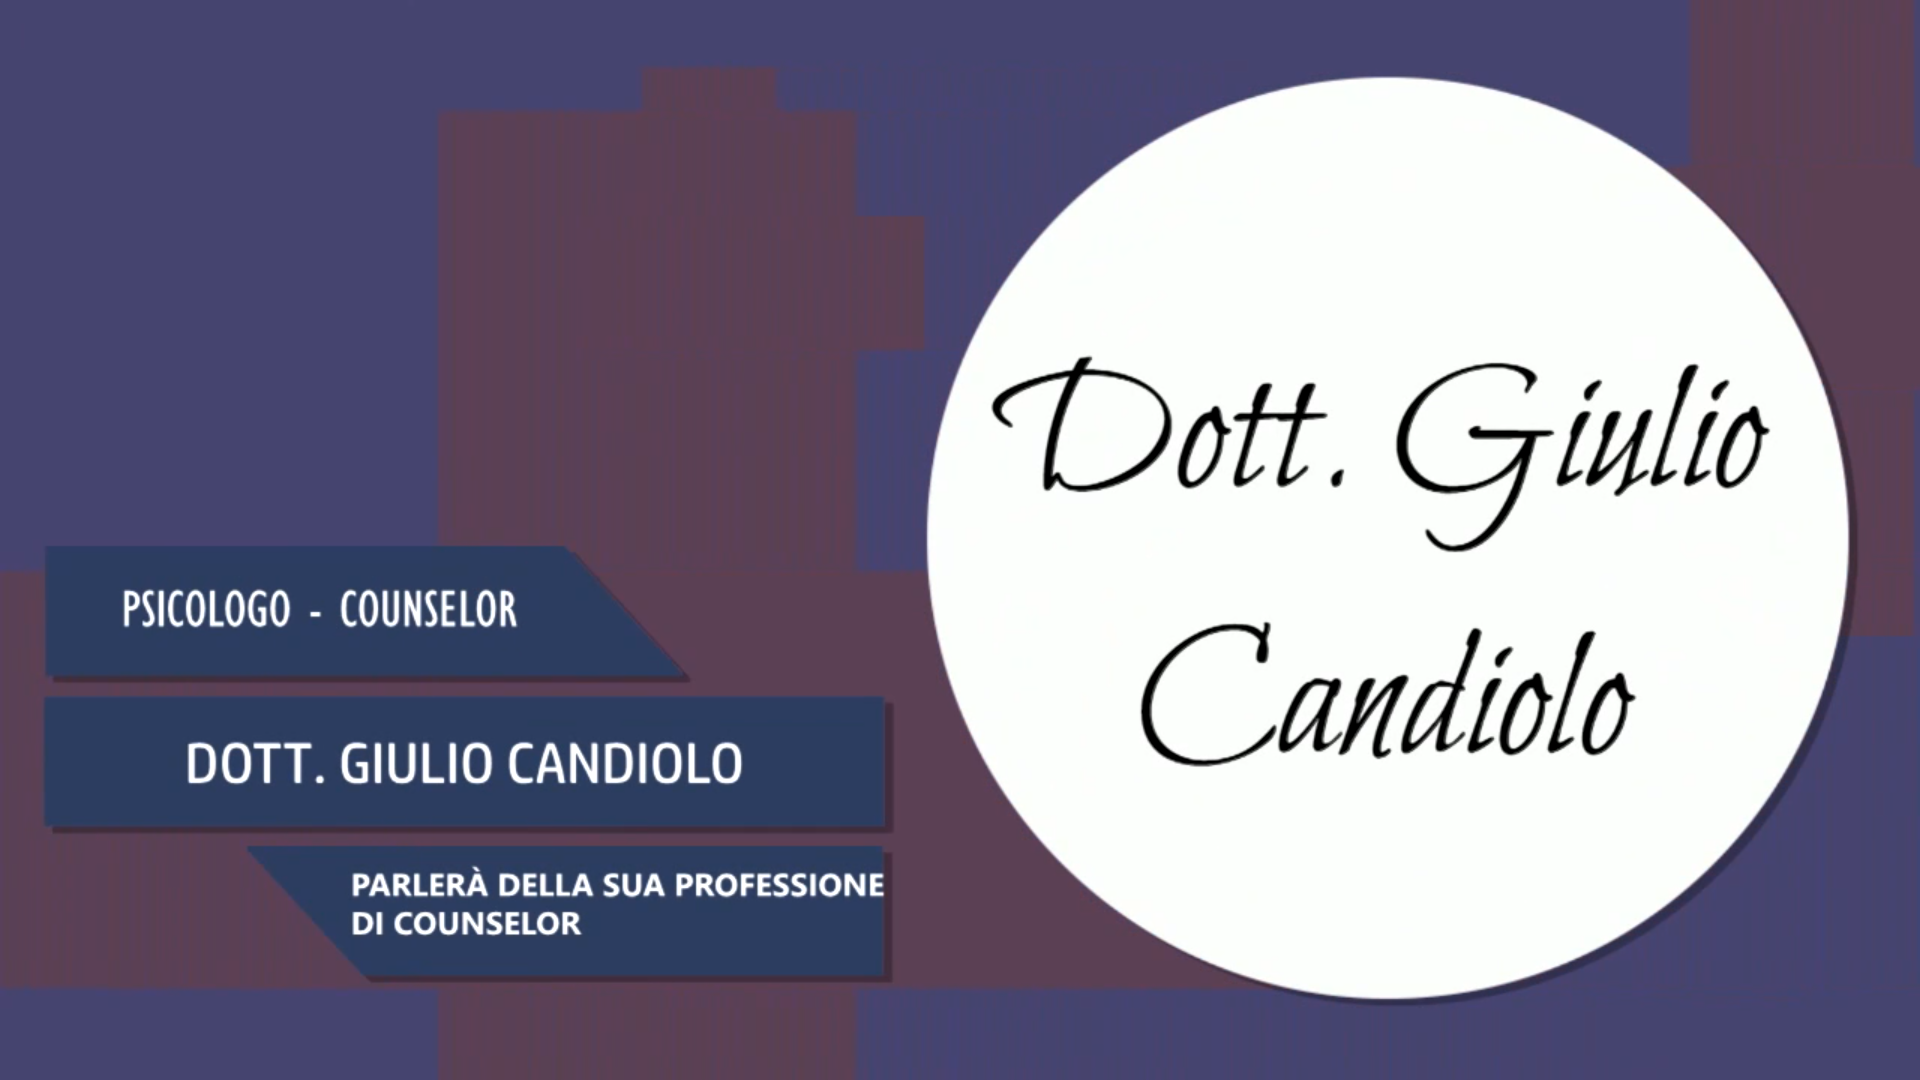 Intervista al Dott. Giulio Candiolo – Parlerà della sua professione di Counselor